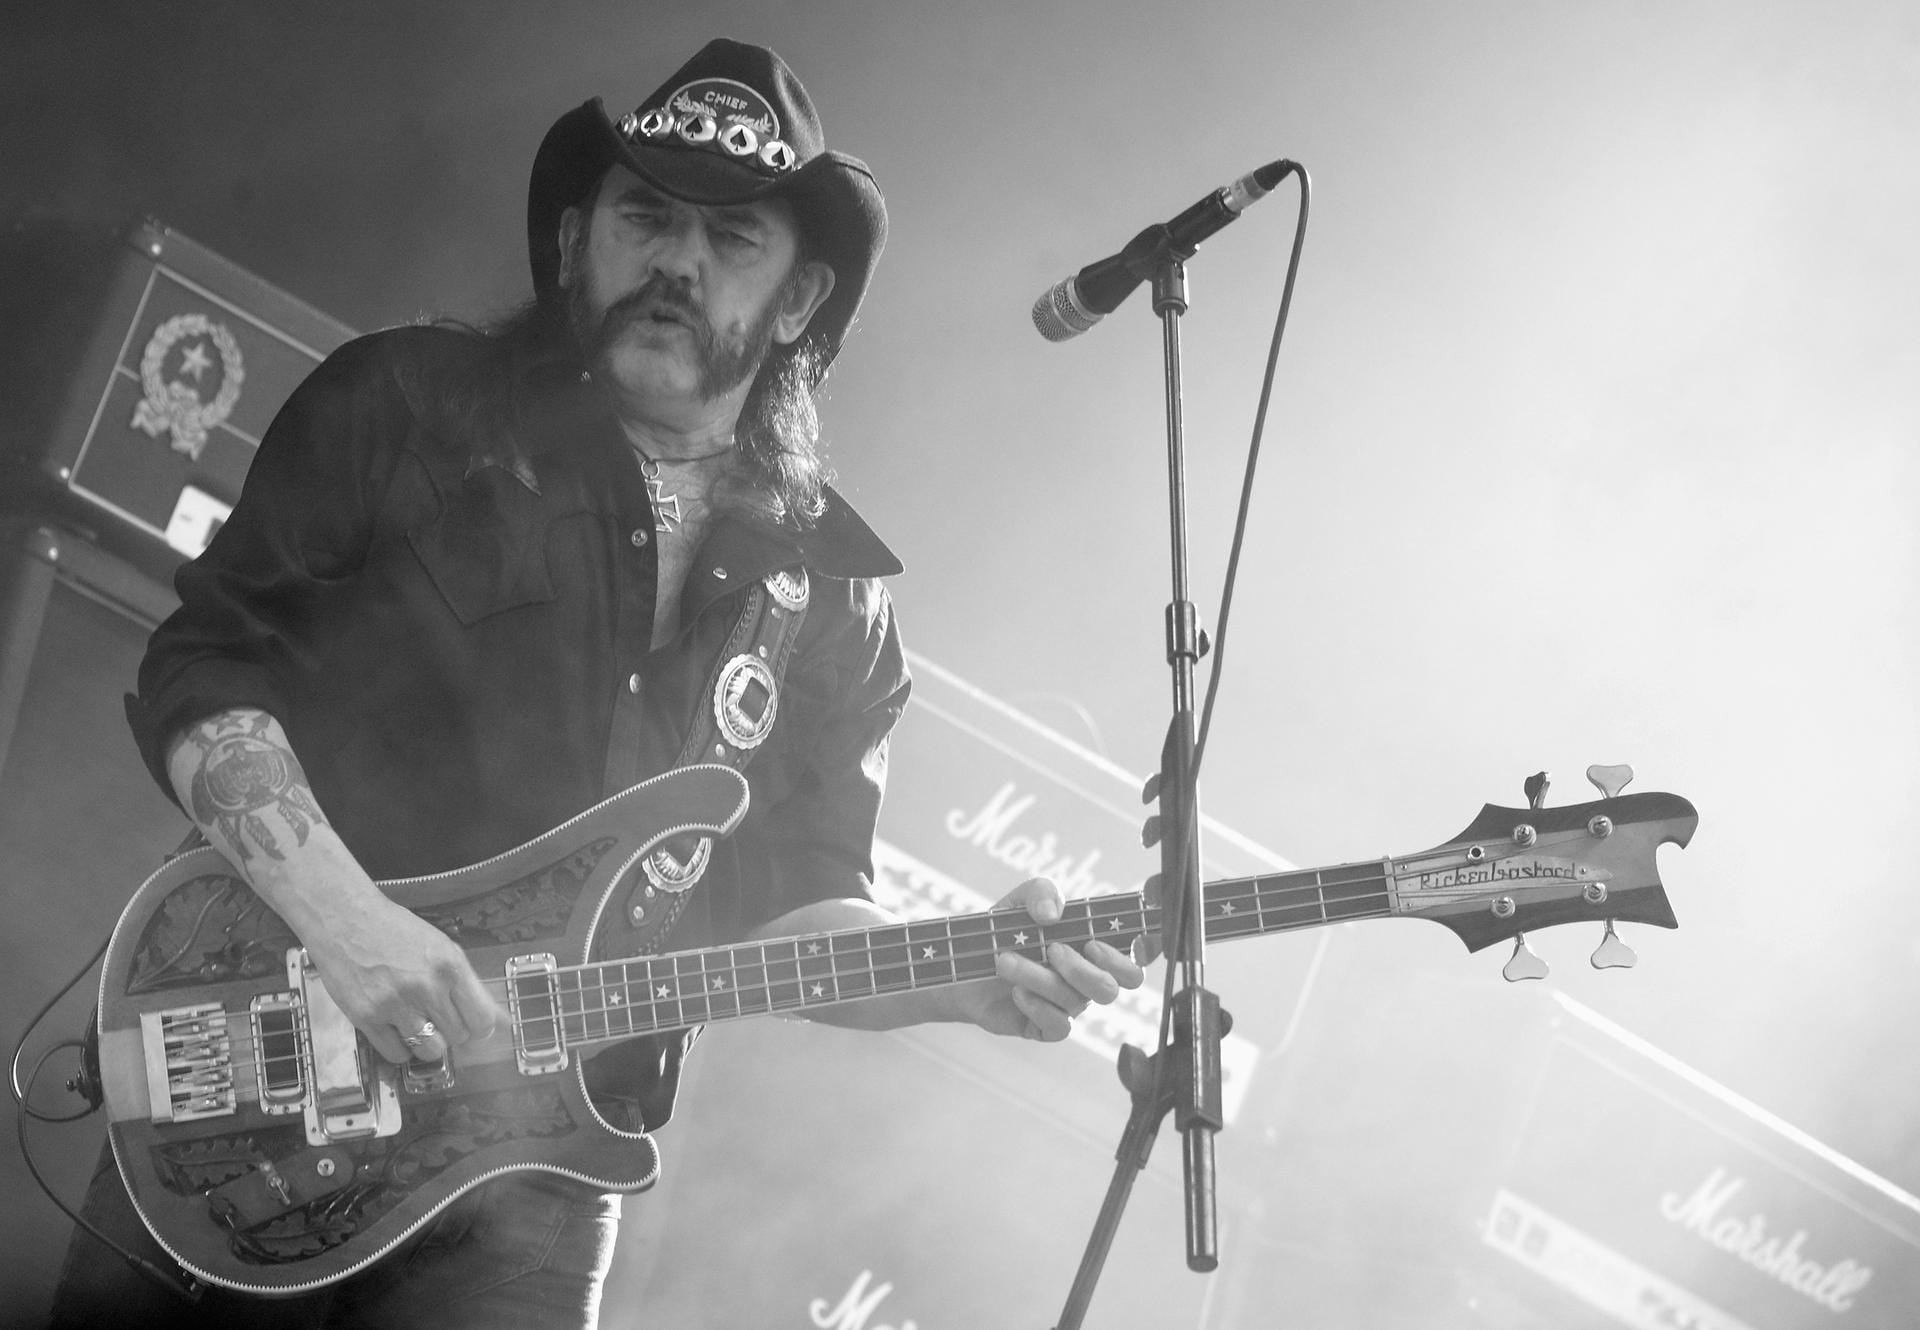 Ian Fraser "Lemmy" Kilmister, Kopf der Hardrock-Band Motörhead, starb am 28. Dezember 2015 an den Folgen eines Krebsleidens. Der Brite wurde 70 Jahre alt.